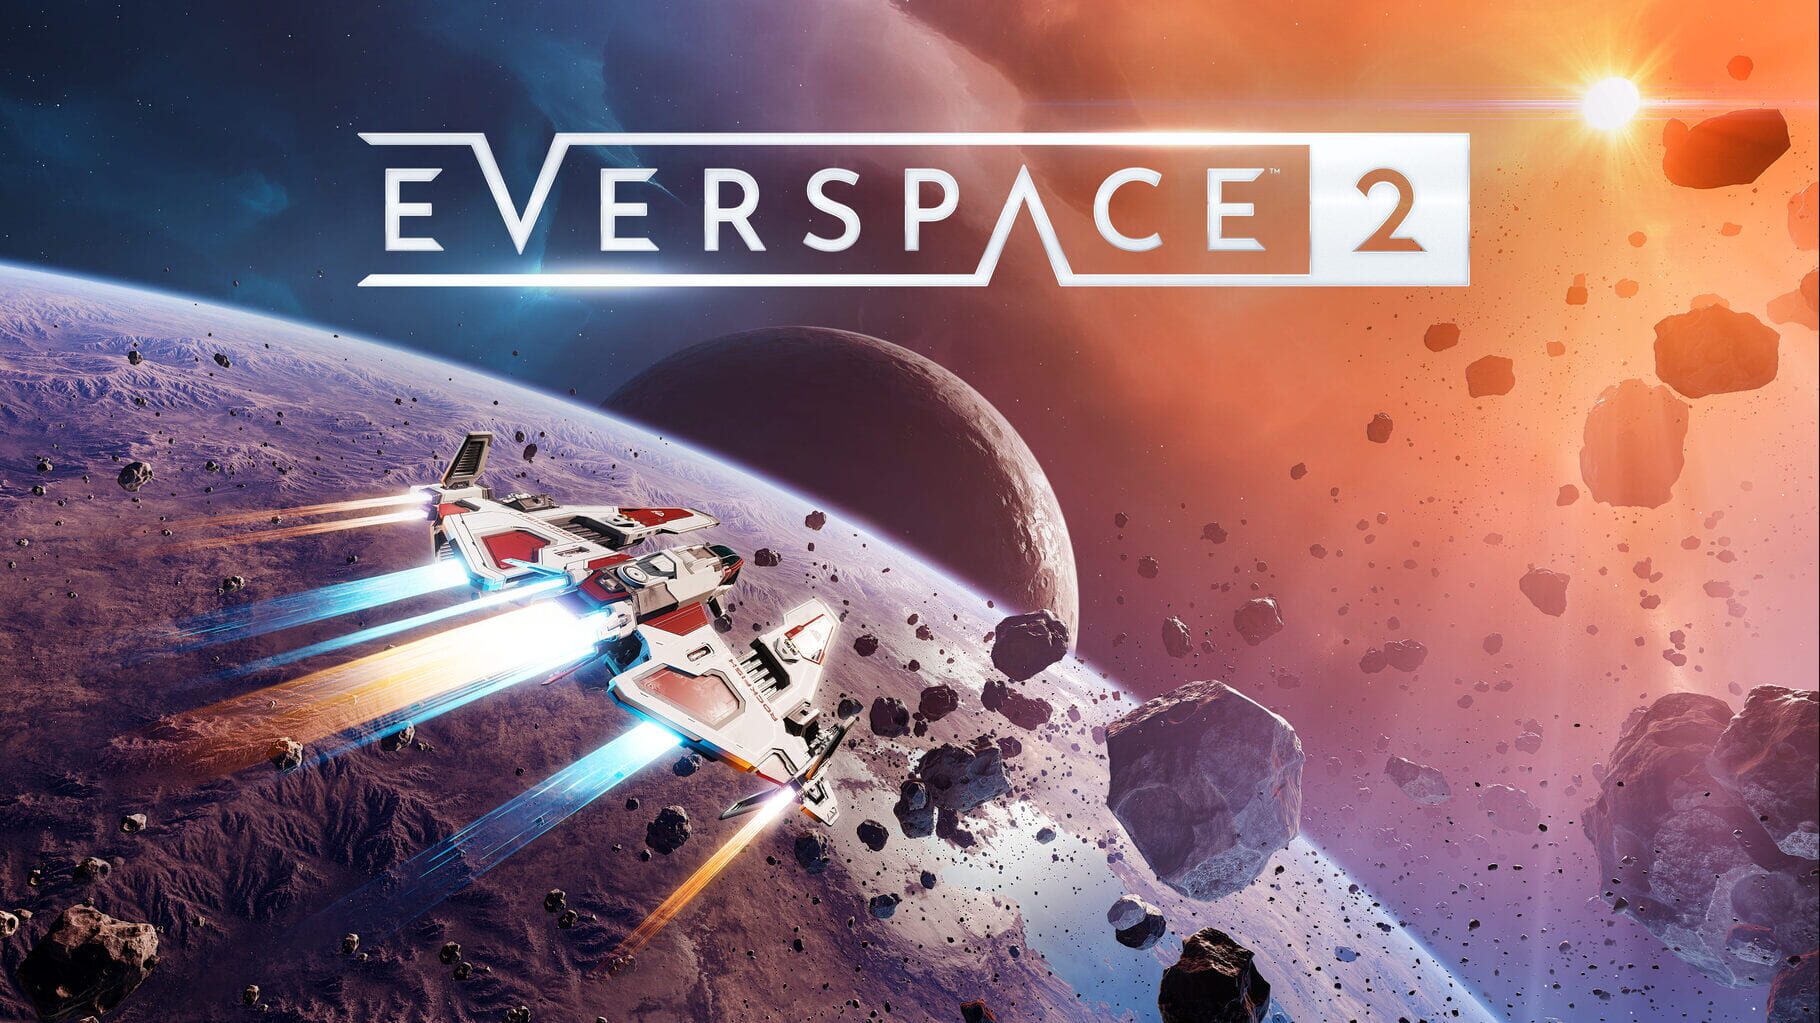 Arte - Everspace 2